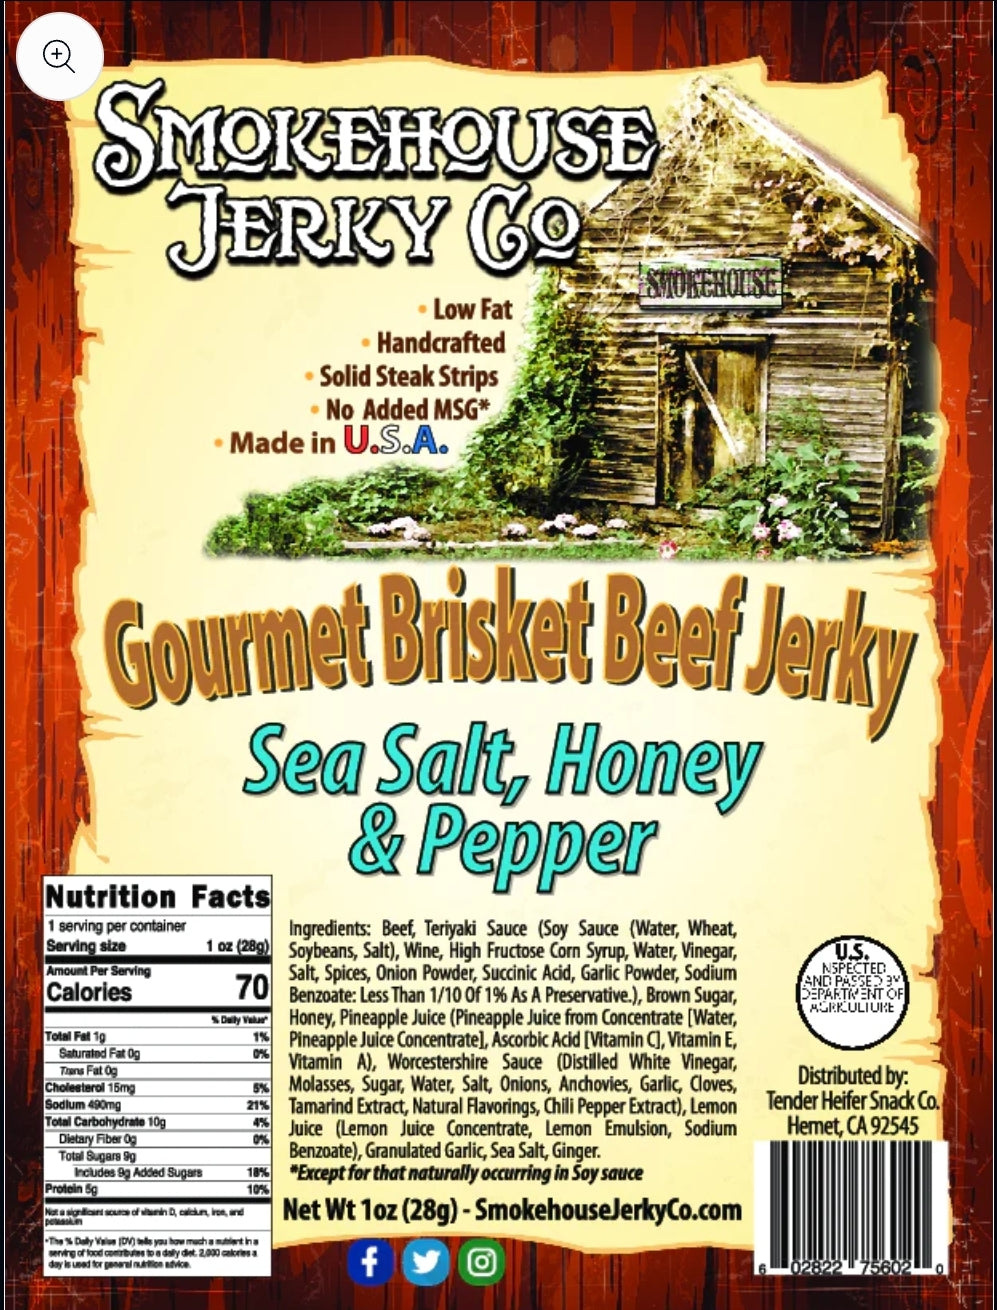 Sea Salt, Honey & Pepper Brisket Jerky